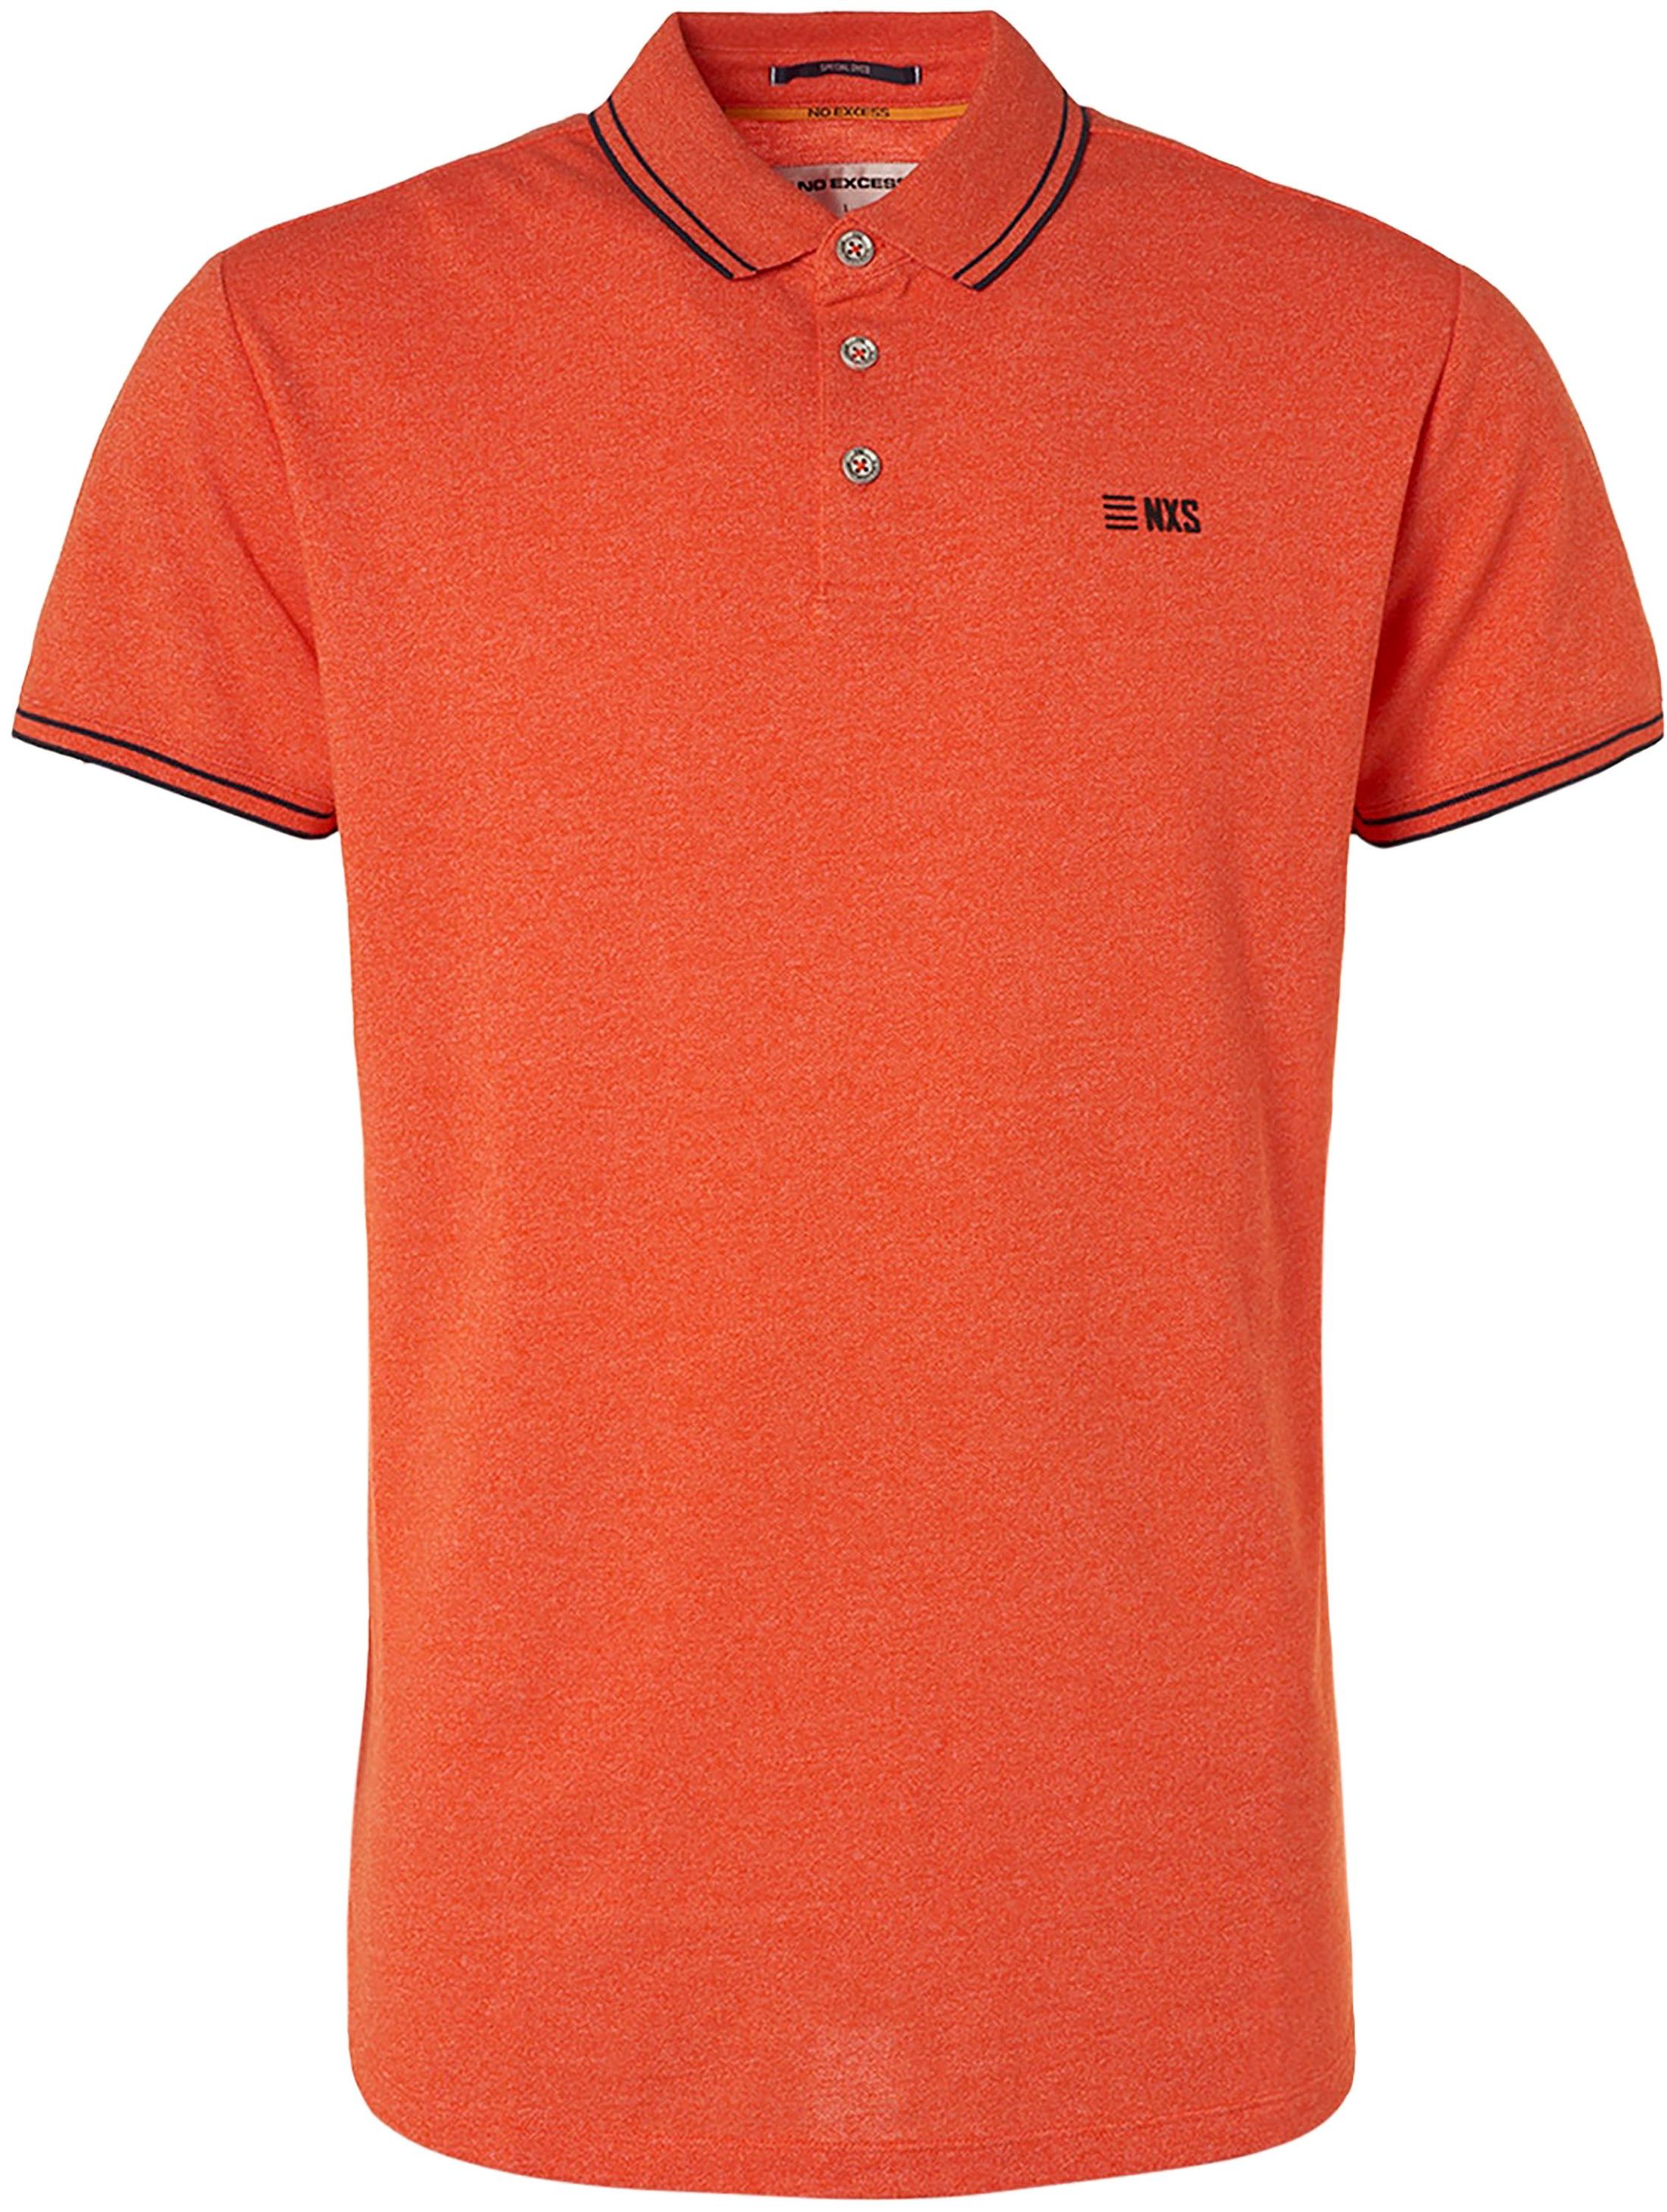 No-Excess Polo Shirt Garment Dye Orange size 3XL